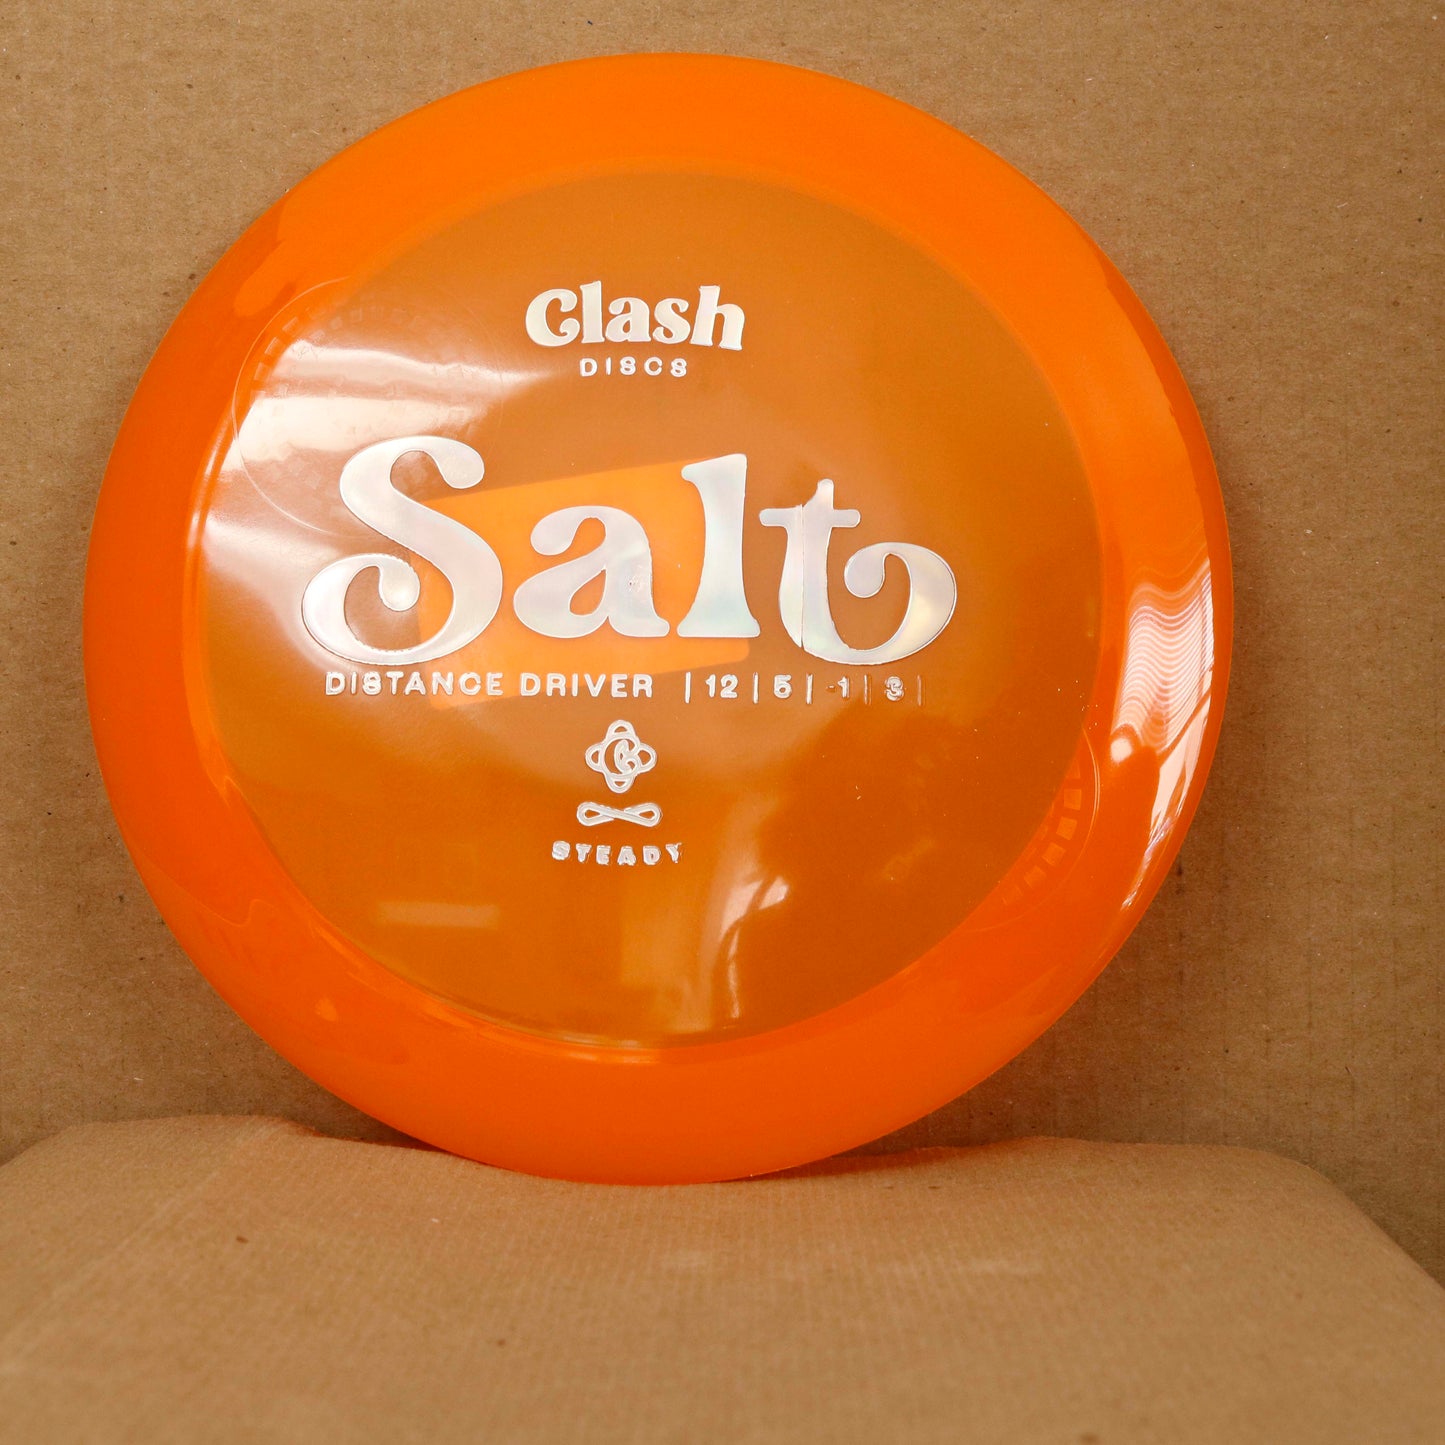 Clash Discs Salt